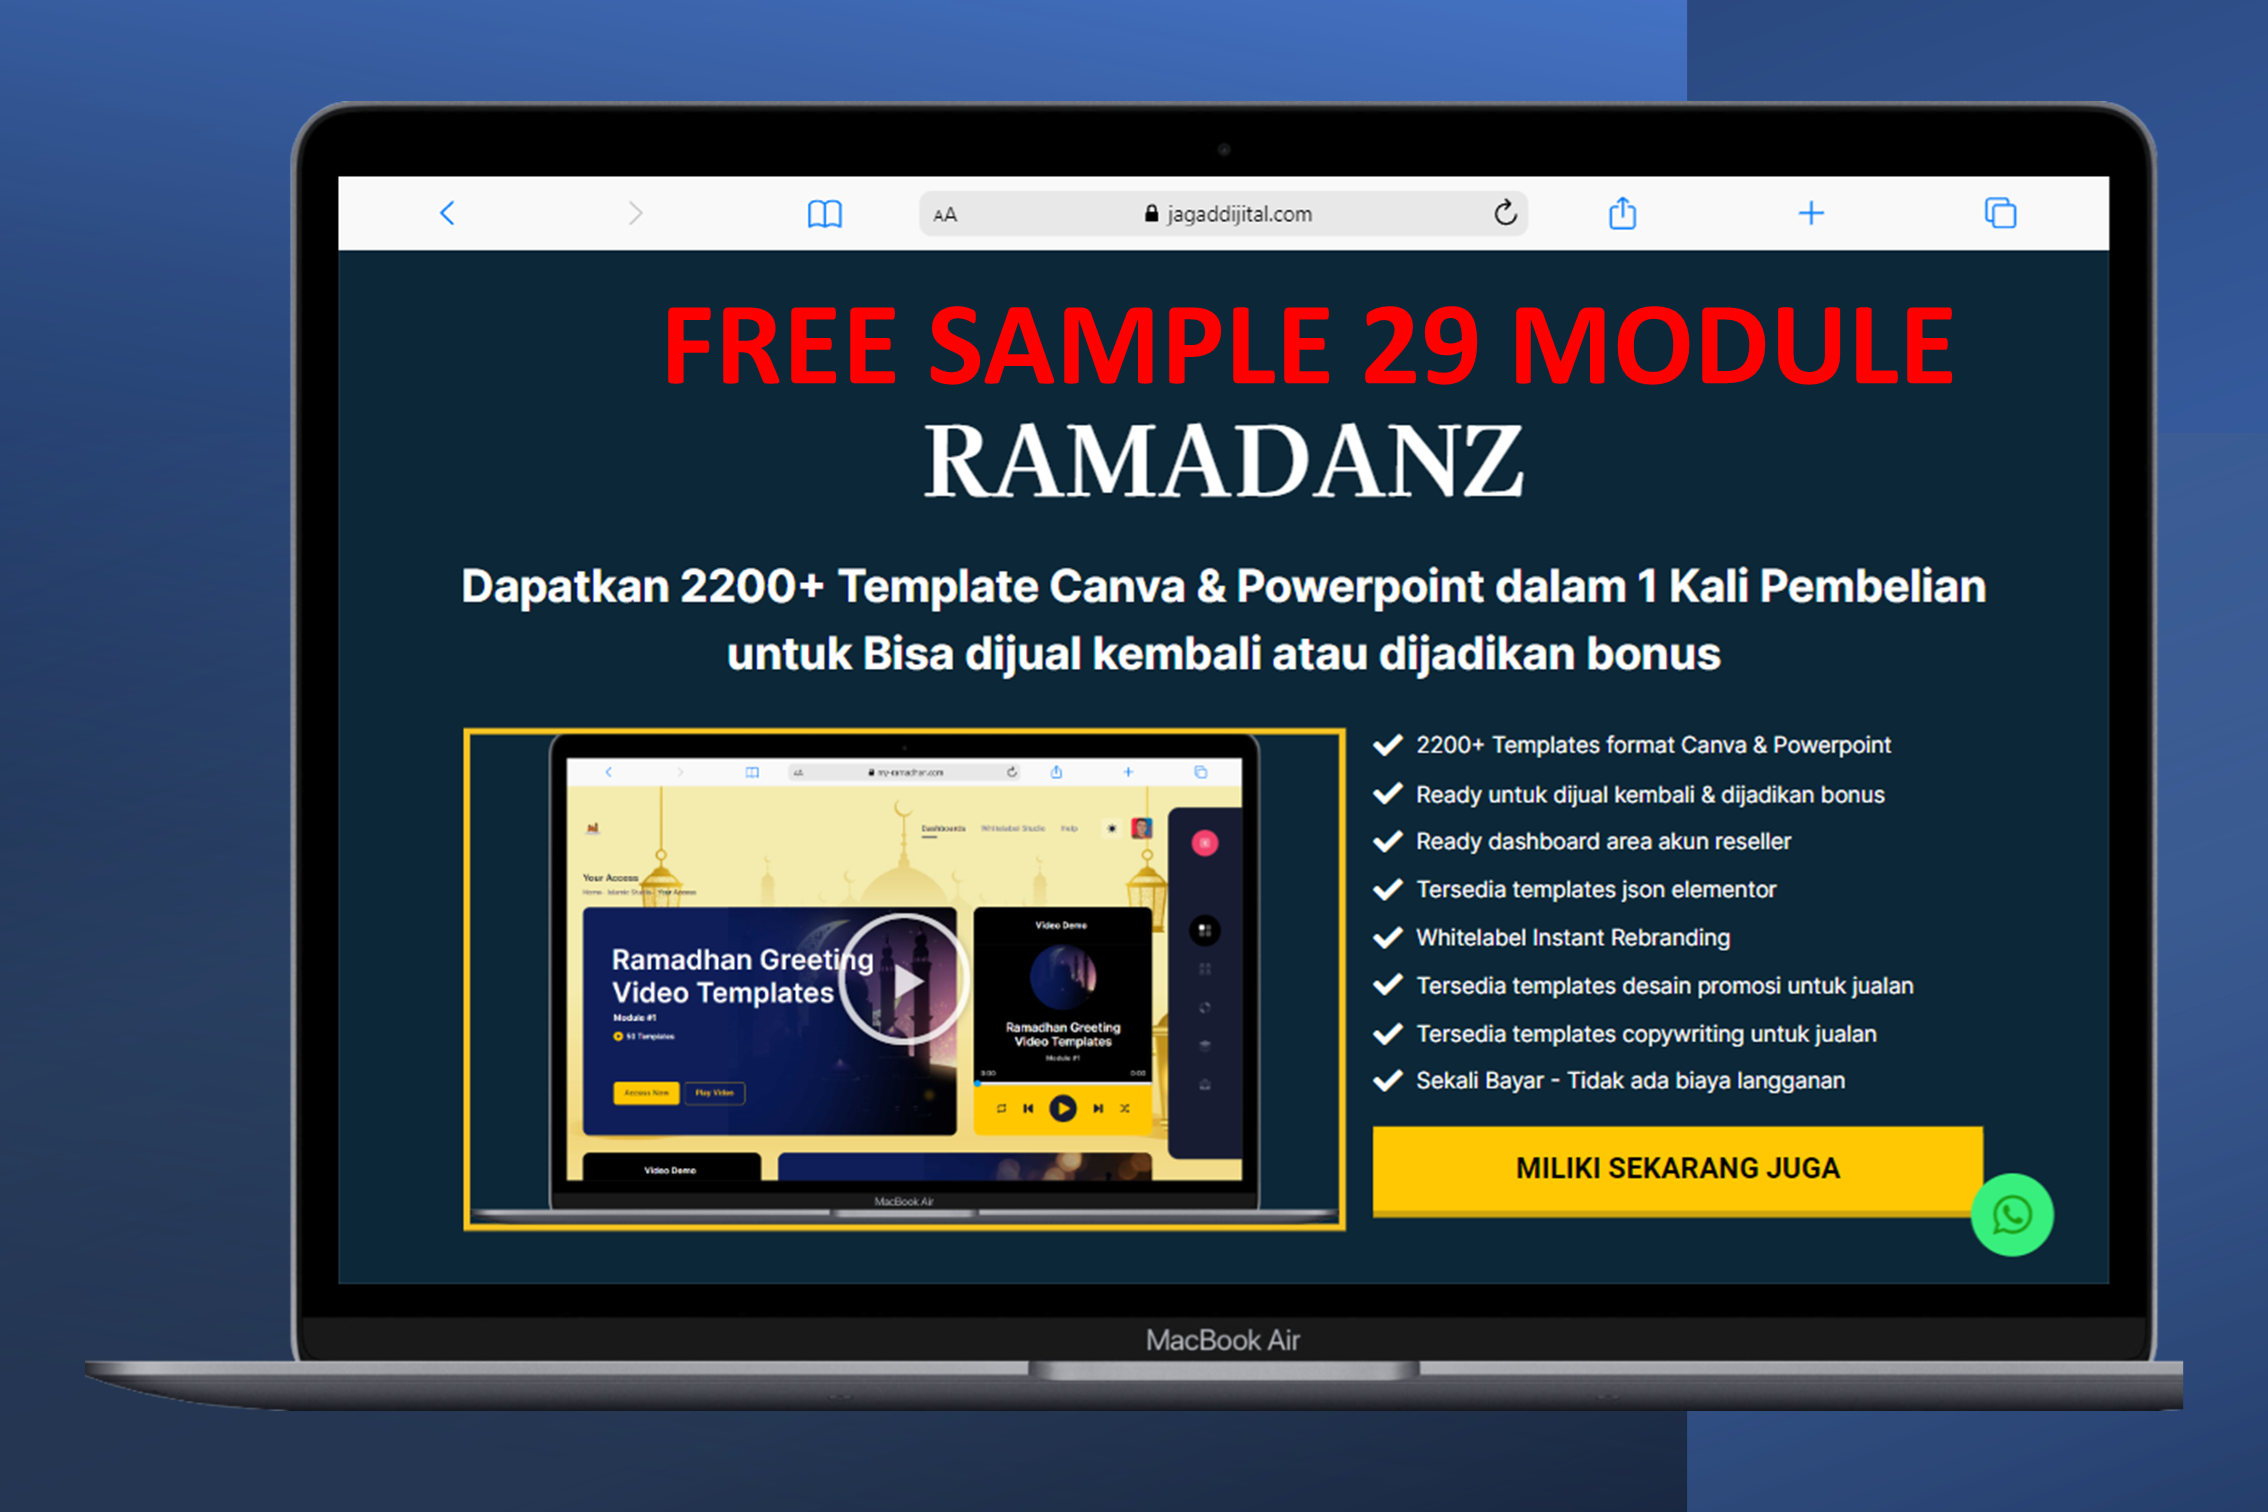 FREE SAMPLE RAMADANZ - GRATIS 29 MODULE TEMA RAMADAN & IDUL FITRI